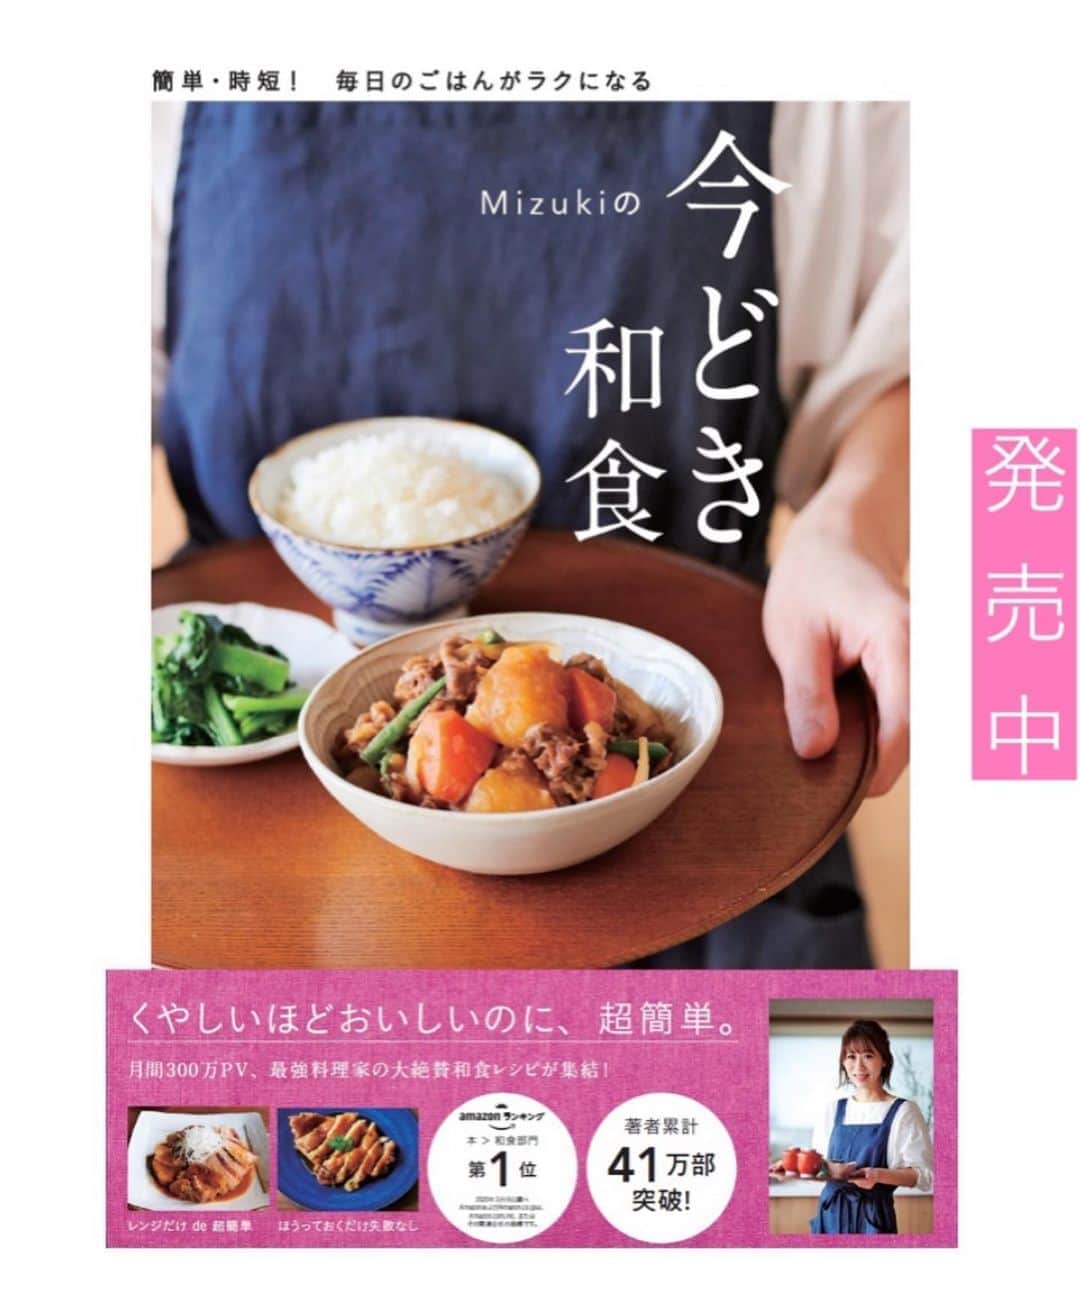 Mizuki【料理ブロガー・簡単レシピ】さんのインスタグラム写真 - (Mizuki【料理ブロガー・簡単レシピ】Instagram)「・﻿ 【レシピ】ーーーーーーーーーーーー﻿ ♡ひき肉ともやしのあんかけ炒め♡﻿ ーーーーーーーーーーーーーーーーー﻿ ﻿ ﻿ ﻿ おはようございます(*^^*)﻿ ﻿ 今日はコスパ抜群の節約おかず！﻿ ［ひき肉ともやしのあんかけ炒め］を﻿ ご紹介させていただきます♩﻿ これ、おかずとしてはもちろん﻿ ごはんや麺にかけても美味しいですよ♡﻿ ﻿ 作り方は超簡単(*´艸`)﻿ さっと炒めてさっと煮るだけ！﻿ 合わせ調味料に片栗粉を加えているので﻿ 面倒なとろみ付けも必要ありません♩﻿ ﻿ ﻿ ﻿ ーーーーーーーーーーーーーーーーーーーー﻿ 【2人分】﻿ 豚ひき肉...150g﻿ もやし...1/2袋(100g)﻿ ピーマン...2個﻿ ごま油...小2﻿ ●水...150ml﻿ ●みりん・オイスターソース...各大1﻿ ●醤油・片栗粉...各小2﻿ ●にんにくチューブ...2cm﻿ ﻿ 1.ピーマンは細切りにする。●は合わせておく。﻿ 2.フライパンにごま油を中火で熱し、ひき肉を炒める。火が通ったらピーマンともやしを加えてさっと炒める。﻿ 3.●をもう一度混ぜてから加え、混ぜながらとろみが付くまで加熱する。﻿ ーーーーーーーーーーーーーーーーーーーー﻿ ﻿ ﻿ ﻿ 《ポイント》﻿ ♦︎合びき肉や鶏ひき肉で作ってもOK♩﻿ ♦︎ピーマンがなければひき肉ともやしだけでも美味しく作れます♩﻿ ﻿ ﻿ ﻿ ﻿ ﻿ ﻿ ＿＿＿＿＿＿＿＿＿＿＿＿＿＿＿＿＿＿＿﻿ 📕7刷重版しました📕﻿ 簡単・時短！ 毎日のごはんがラクになる﻿ ✨🦋 【 #Mizukiの今どき和食 】🦋✨﻿ ＿＿＿＿＿＿＿＿＿＿＿＿＿＿＿＿＿＿＿﻿ なるべく少ない材料で﻿ 手間も時間も省きながら﻿ 簡単にできるおいしい和食レシピ♩﻿ 簡単に失敗なくマスターできる一冊で﻿ もっと気軽に、カジュアルに﻿ 和食を楽しんで下さいね(*^^*)﻿ ＿＿＿＿＿＿＿＿＿＿＿＿＿＿＿＿＿＿＿﻿ ﻿ ﻿ ﻿ ＿＿＿＿＿＿＿＿＿＿＿＿＿＿＿＿＿＿＿﻿ 🎀6刷重版しました🎀﻿ 混ぜて焼くだけ。はじめてでも失敗しない！﻿ 【#ホットケーキミックスのお菓子 】﻿ ﻿ 一冊まるっとホケミスイーツ♩﻿ 普段のおやつから﻿ 特別な日にも使えるレシピを﻿ この一冊に詰め込みました(*^^*)﻿ ホットケーキミックスを使えば﻿ 簡単に本格的なお菓子が作れますよ♡﻿ ＿＿＿＿＿＿＿＿＿＿＿＿＿＿＿＿＿﻿ ﻿ ﻿ ﻿ ﻿ ￣￣￣￣￣￣￣￣￣￣￣￣￣￣￣￣￣￣﻿ レシピを作って下さった際や﻿ レシピ本についてのご投稿には﻿ タグ付け( @mizuki_31cafe )して﻿ お知らせいただけると嬉しいです😊💕﻿ ＿＿＿＿＿＿＿＿＿＿＿＿＿＿＿＿＿＿﻿ ﻿ ﻿ ﻿ ﻿ ﻿ #ひき肉#もやし#ピーマン#あんかけ﻿ #Mizuki#簡単レシピ#時短レシピ#節約レシピ#料理#レシピ#フーディーテーブル#マカロニメイト#おうちごはん#デリスタグラマー#料理好きな人と繋がりたい#食べ物#料理記録#おうちごはんlover#写真好きな人と繋がりたい#foodpic#cooking#recipe#lin_stagrammer#foodporn#yummy#ひき肉ともやしのあんかけ炒めm」8月22日 7時09分 - mizuki_31cafe